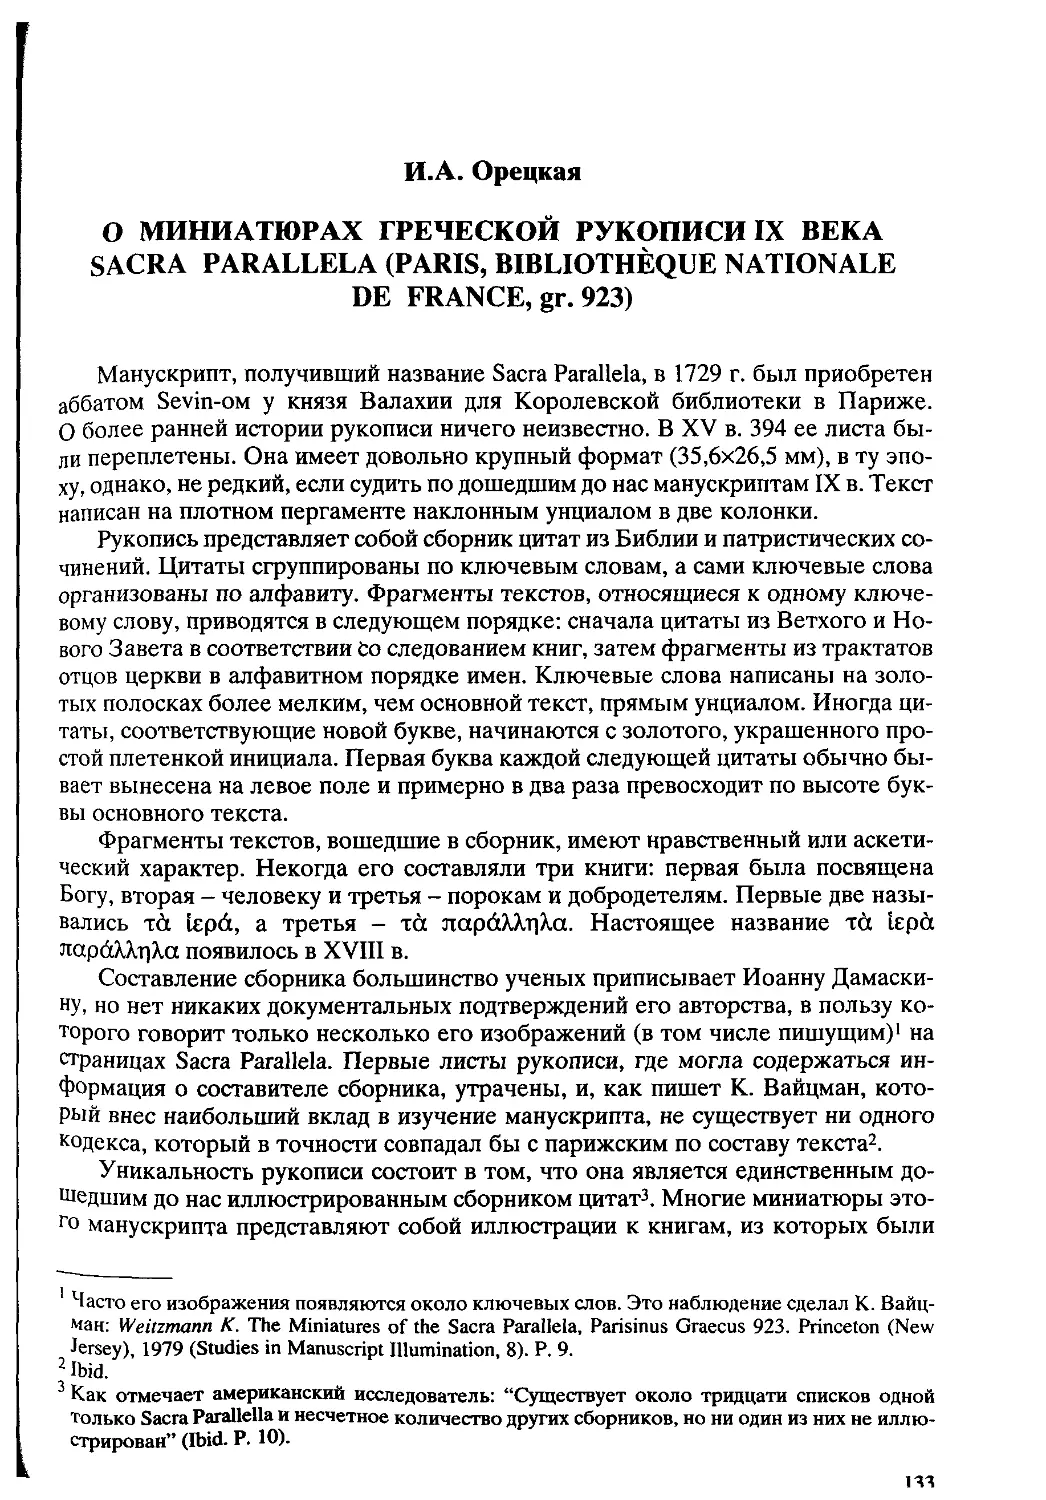 ﻿Орецкая И. А. О миниатюрах греческой рукописи IX века Sacra Parallela øParis, Bibliothèque Nationale de France, gr. 923